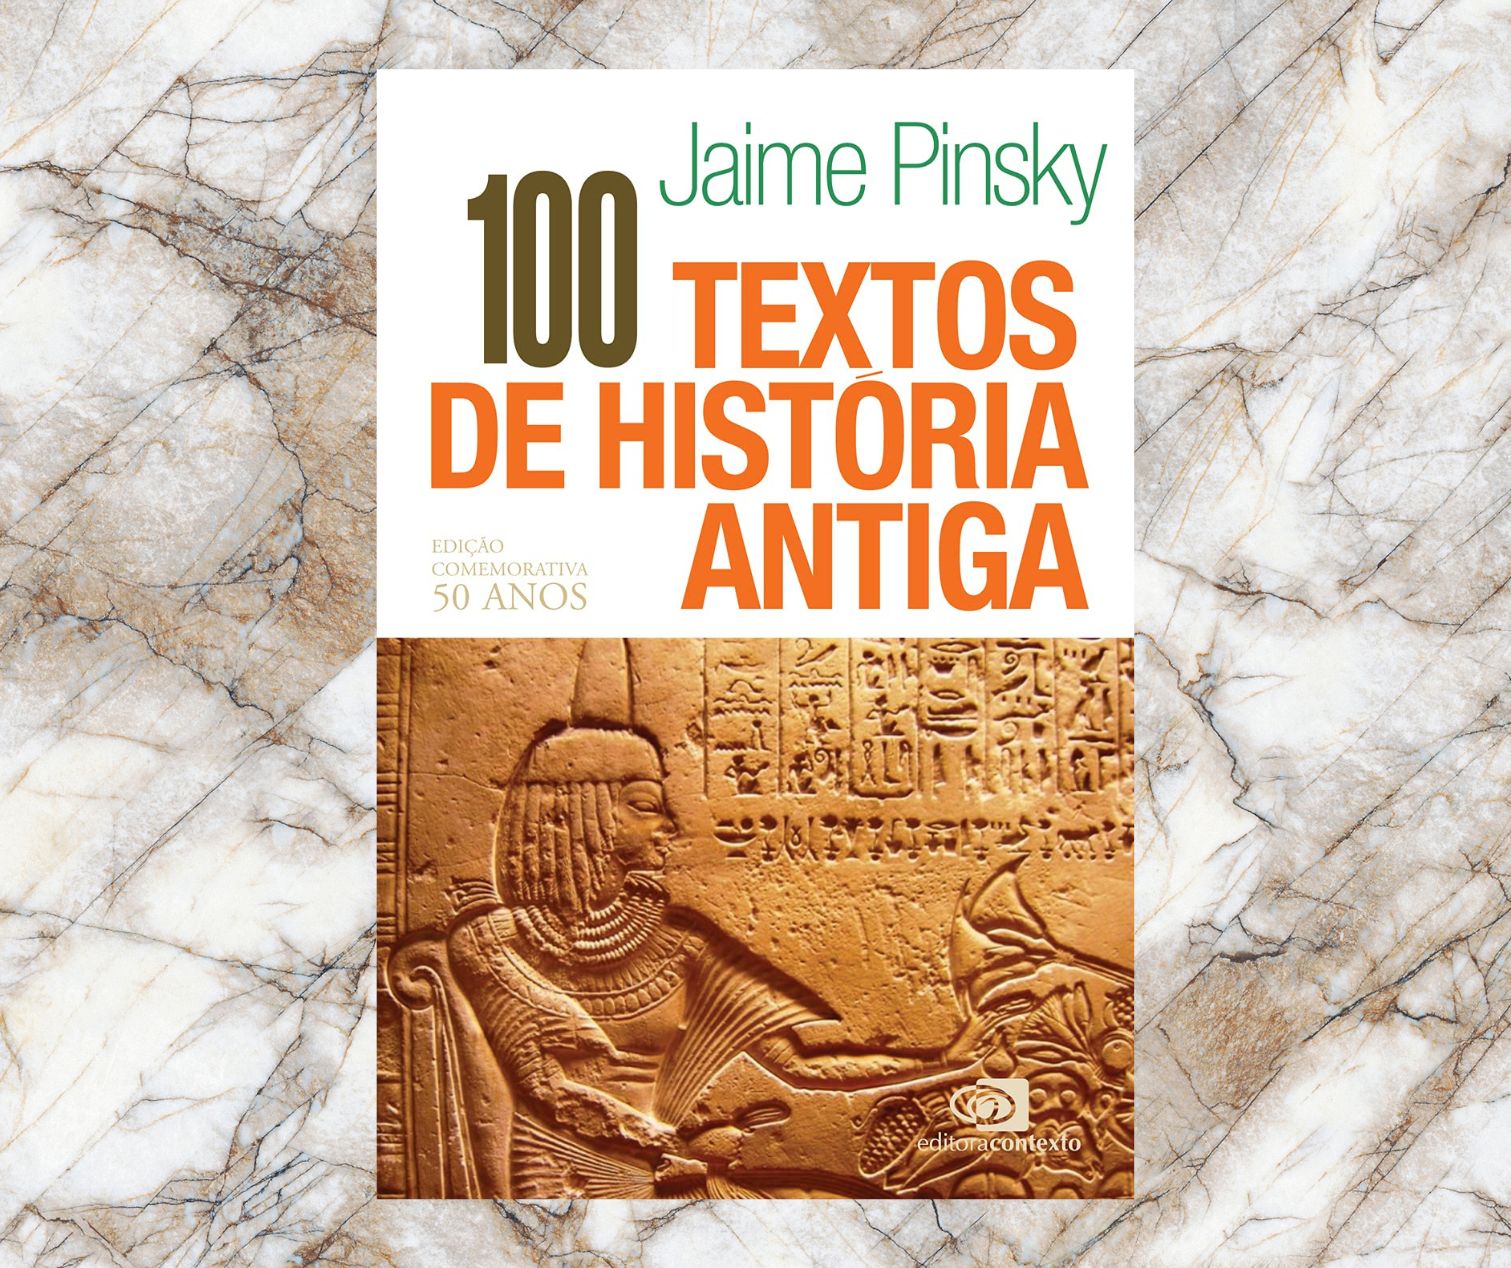 Resenha: 100 textos de história antiga, de Jaime Pinsky